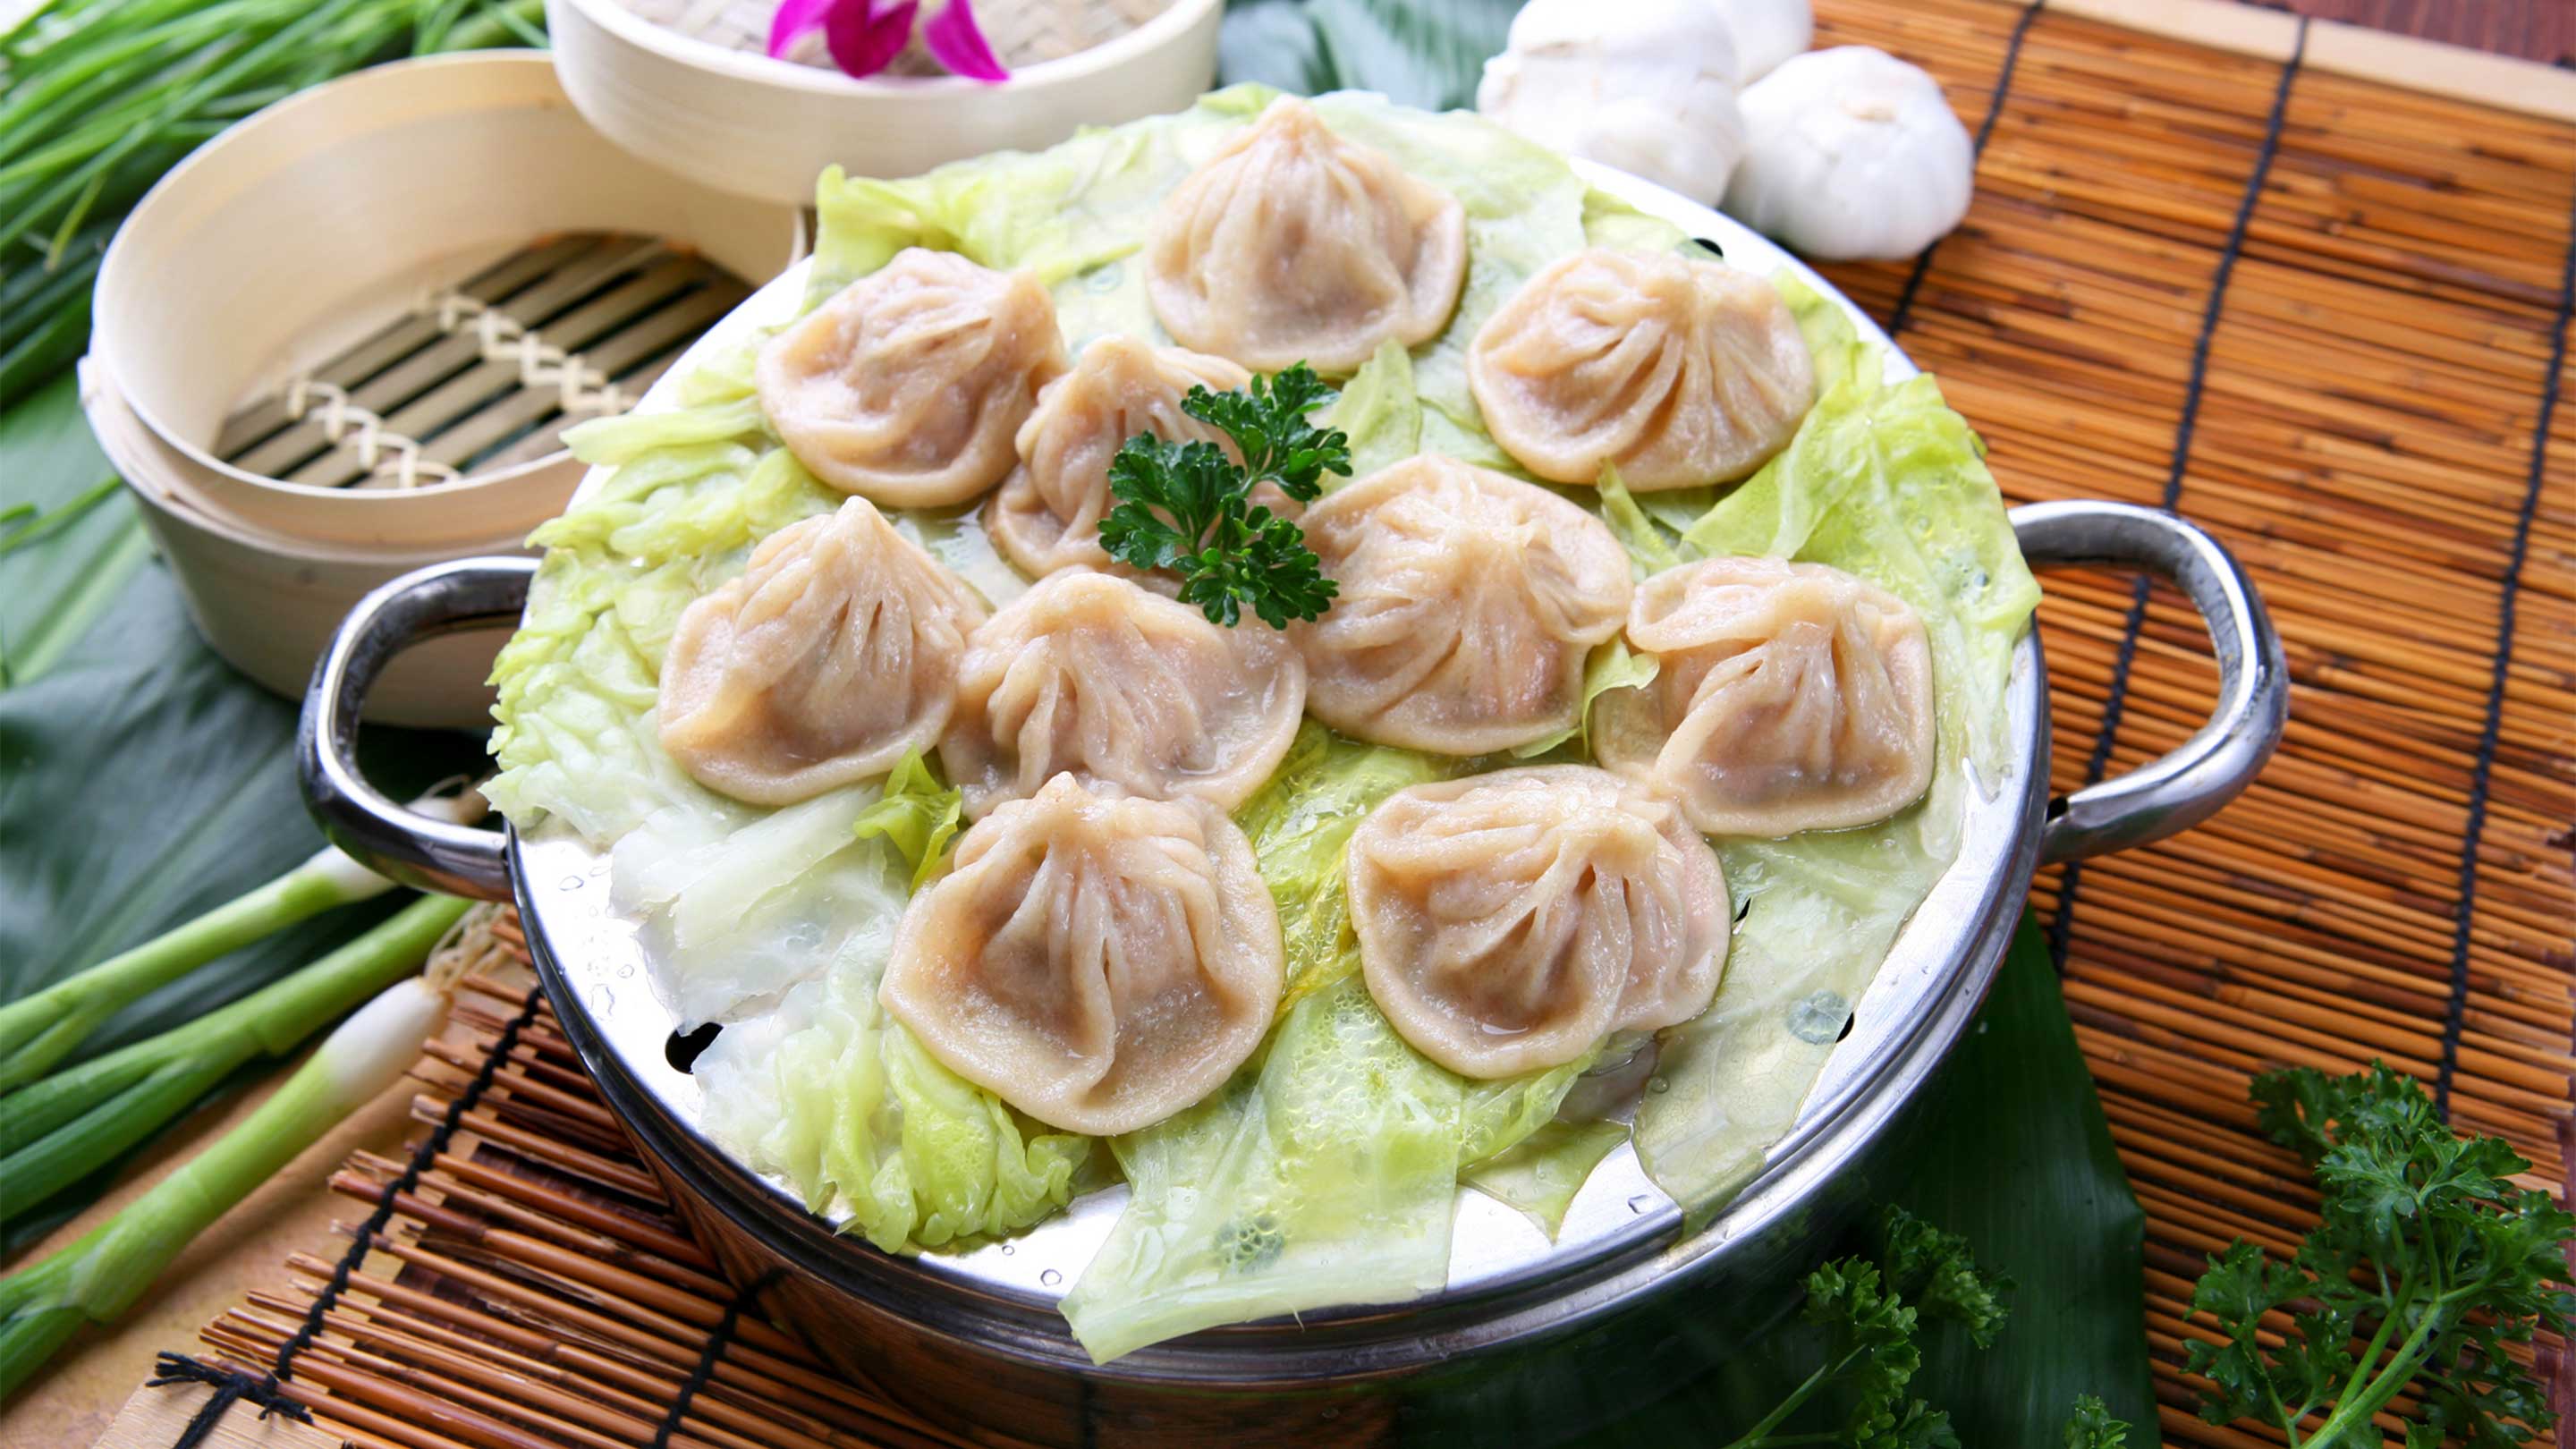 Dumplings nanjing